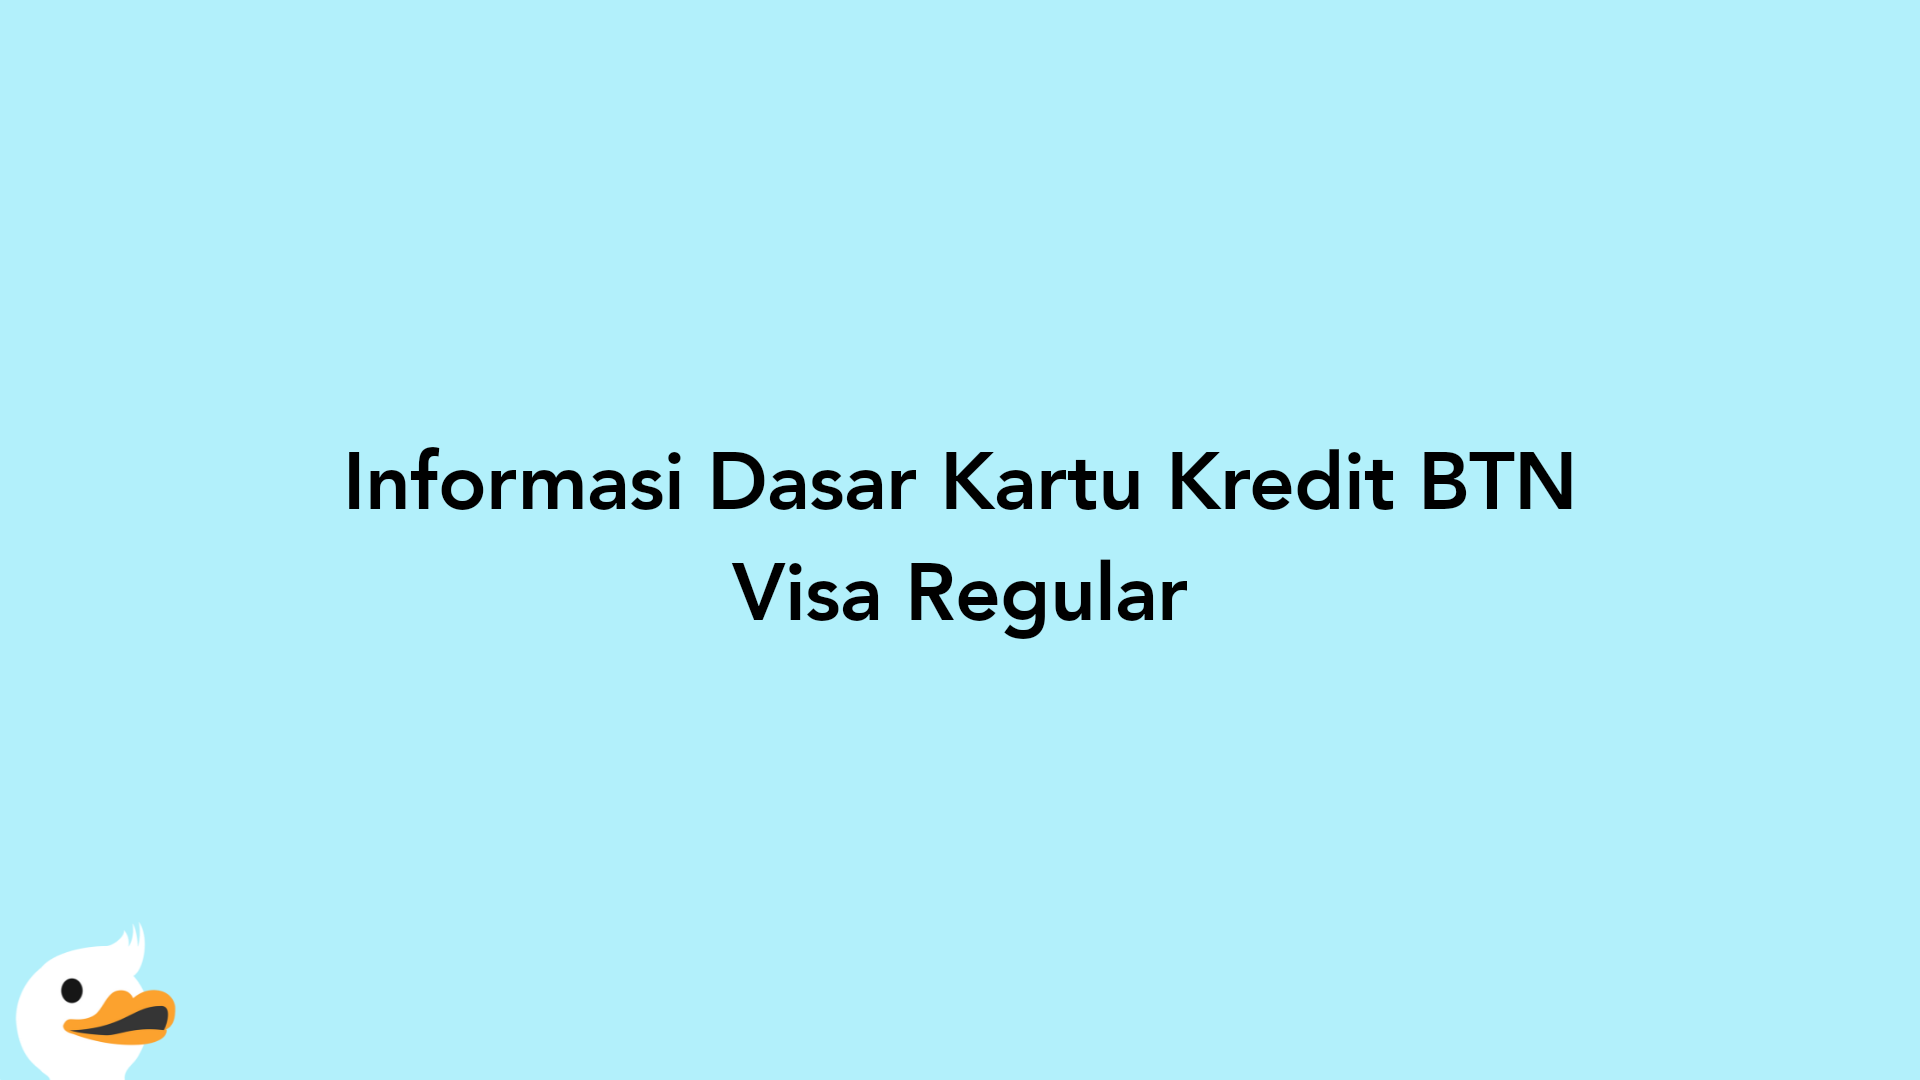 Informasi Dasar Kartu Kredit BTN Visa Regular